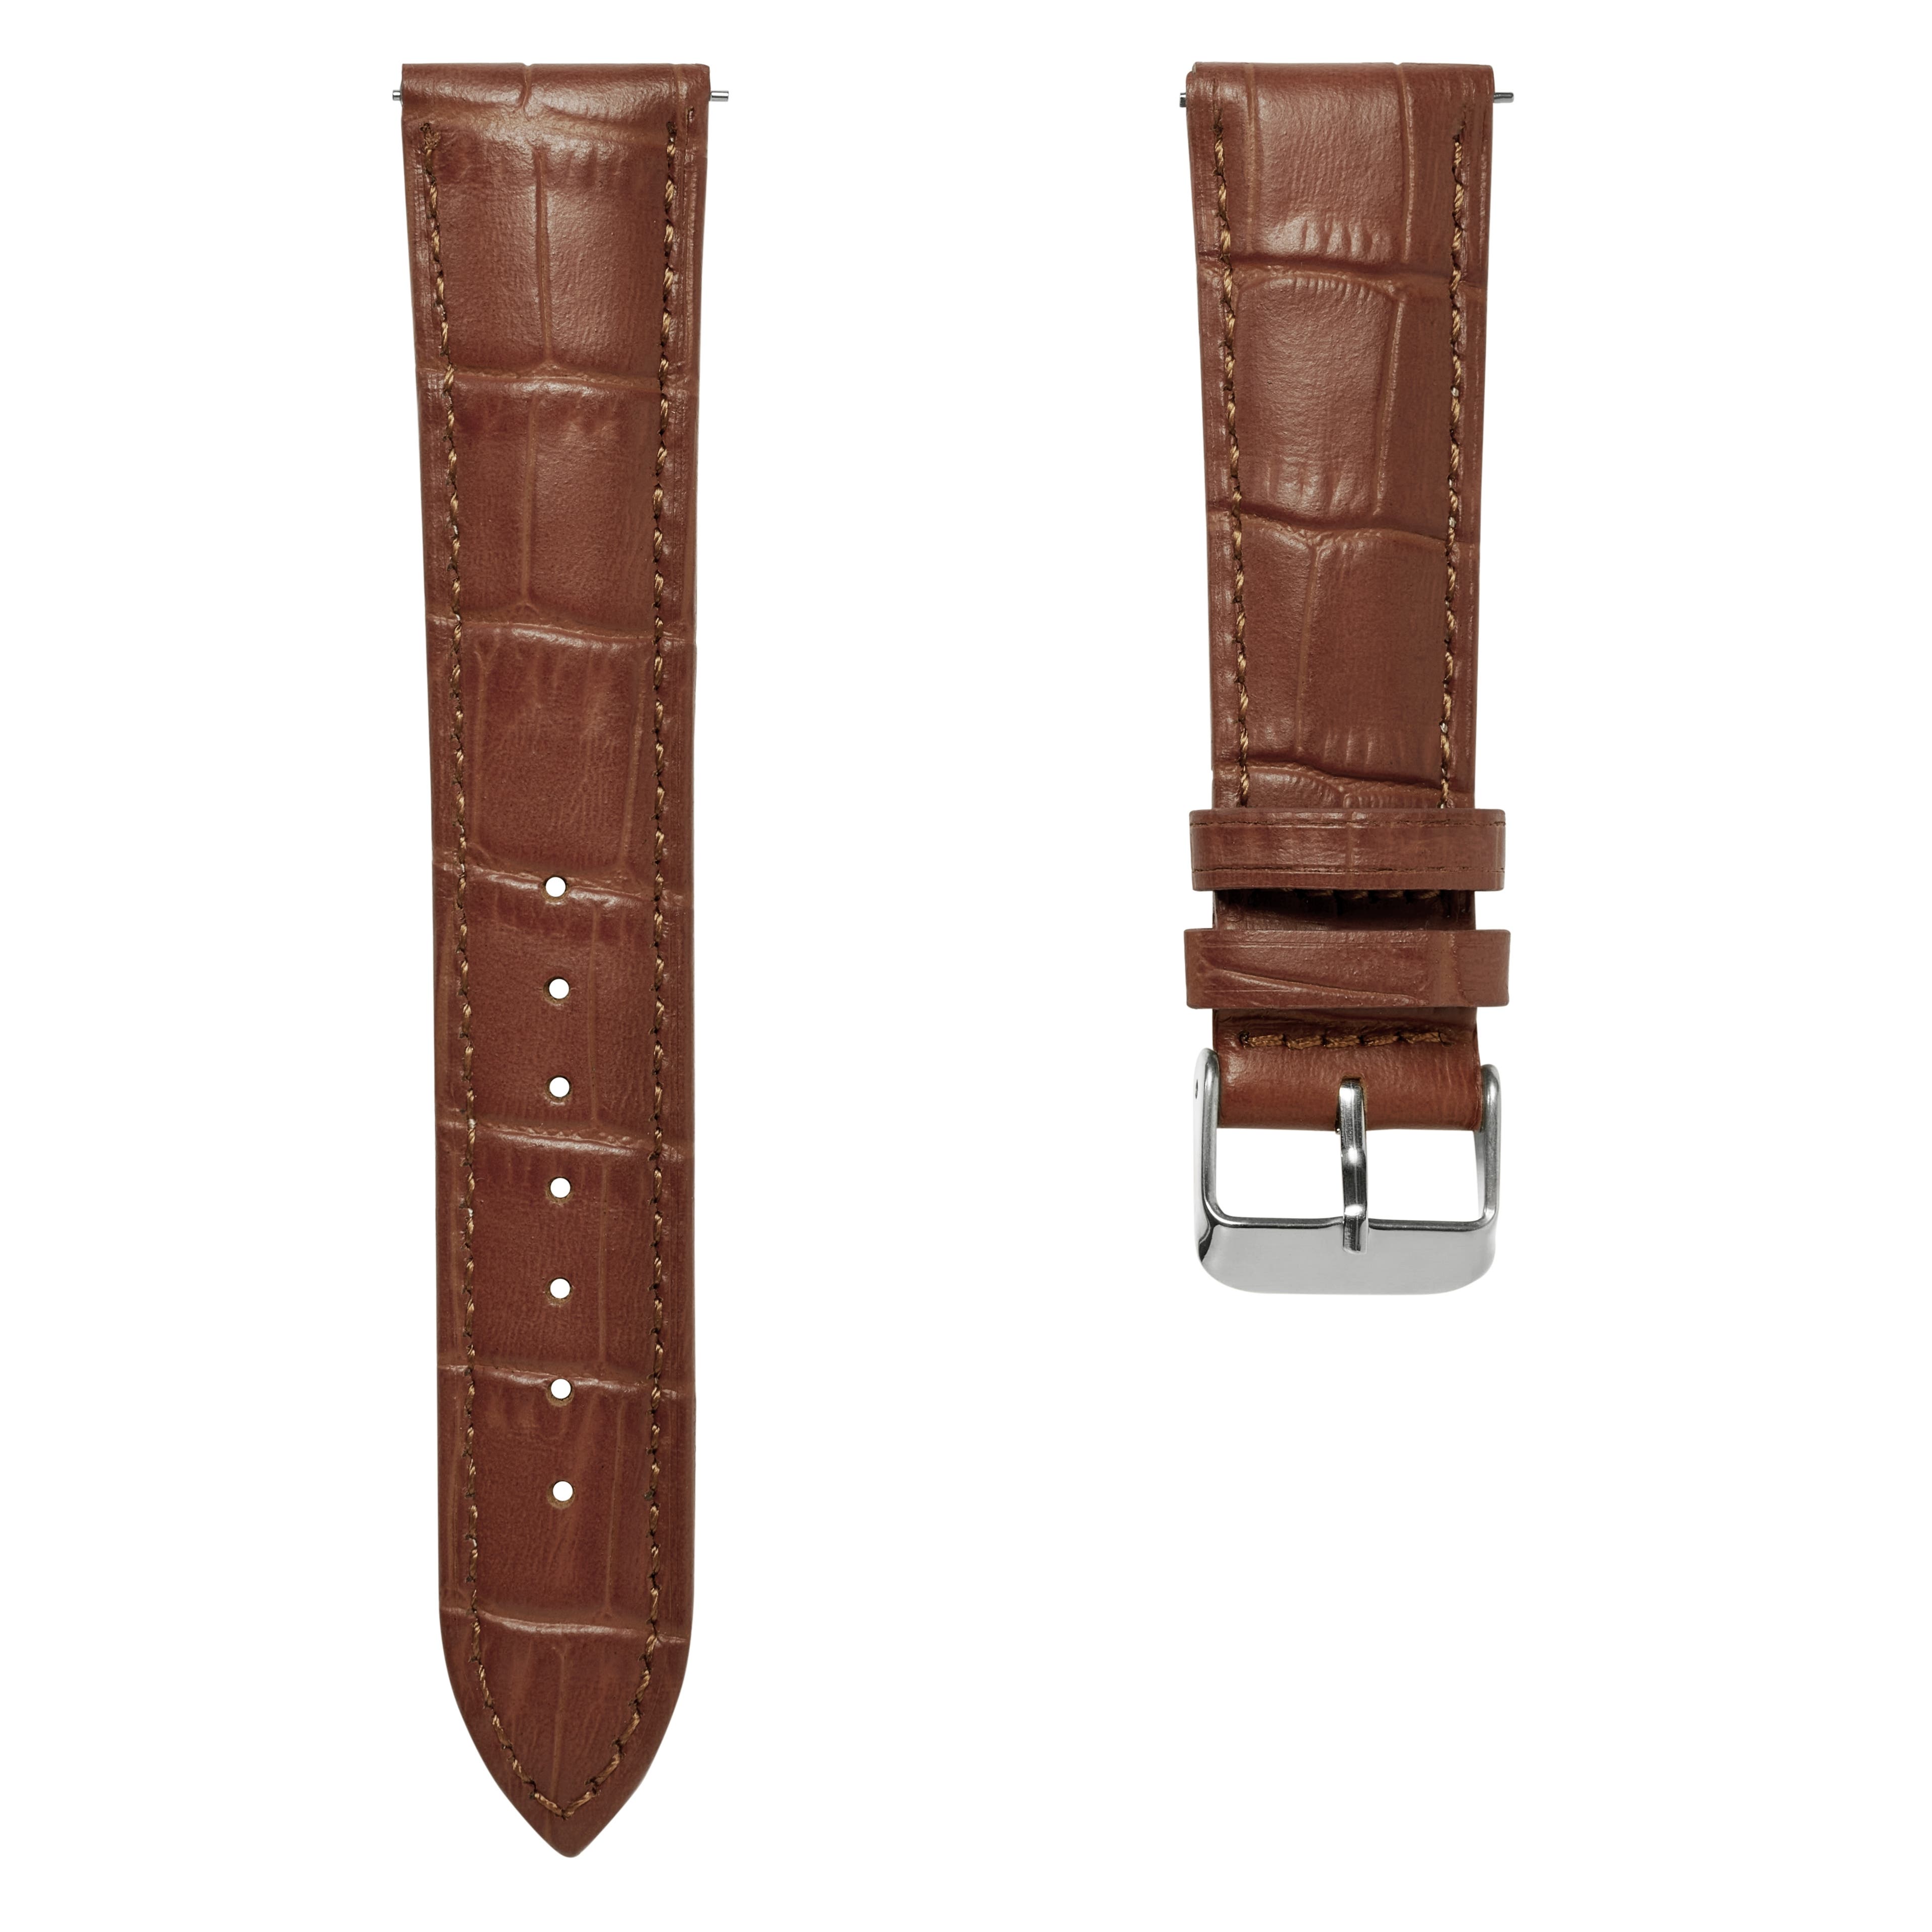 20 mm horlogeband van bruin leer met krokodillenmotief en zilverkleurige gesp – Snelsluiting